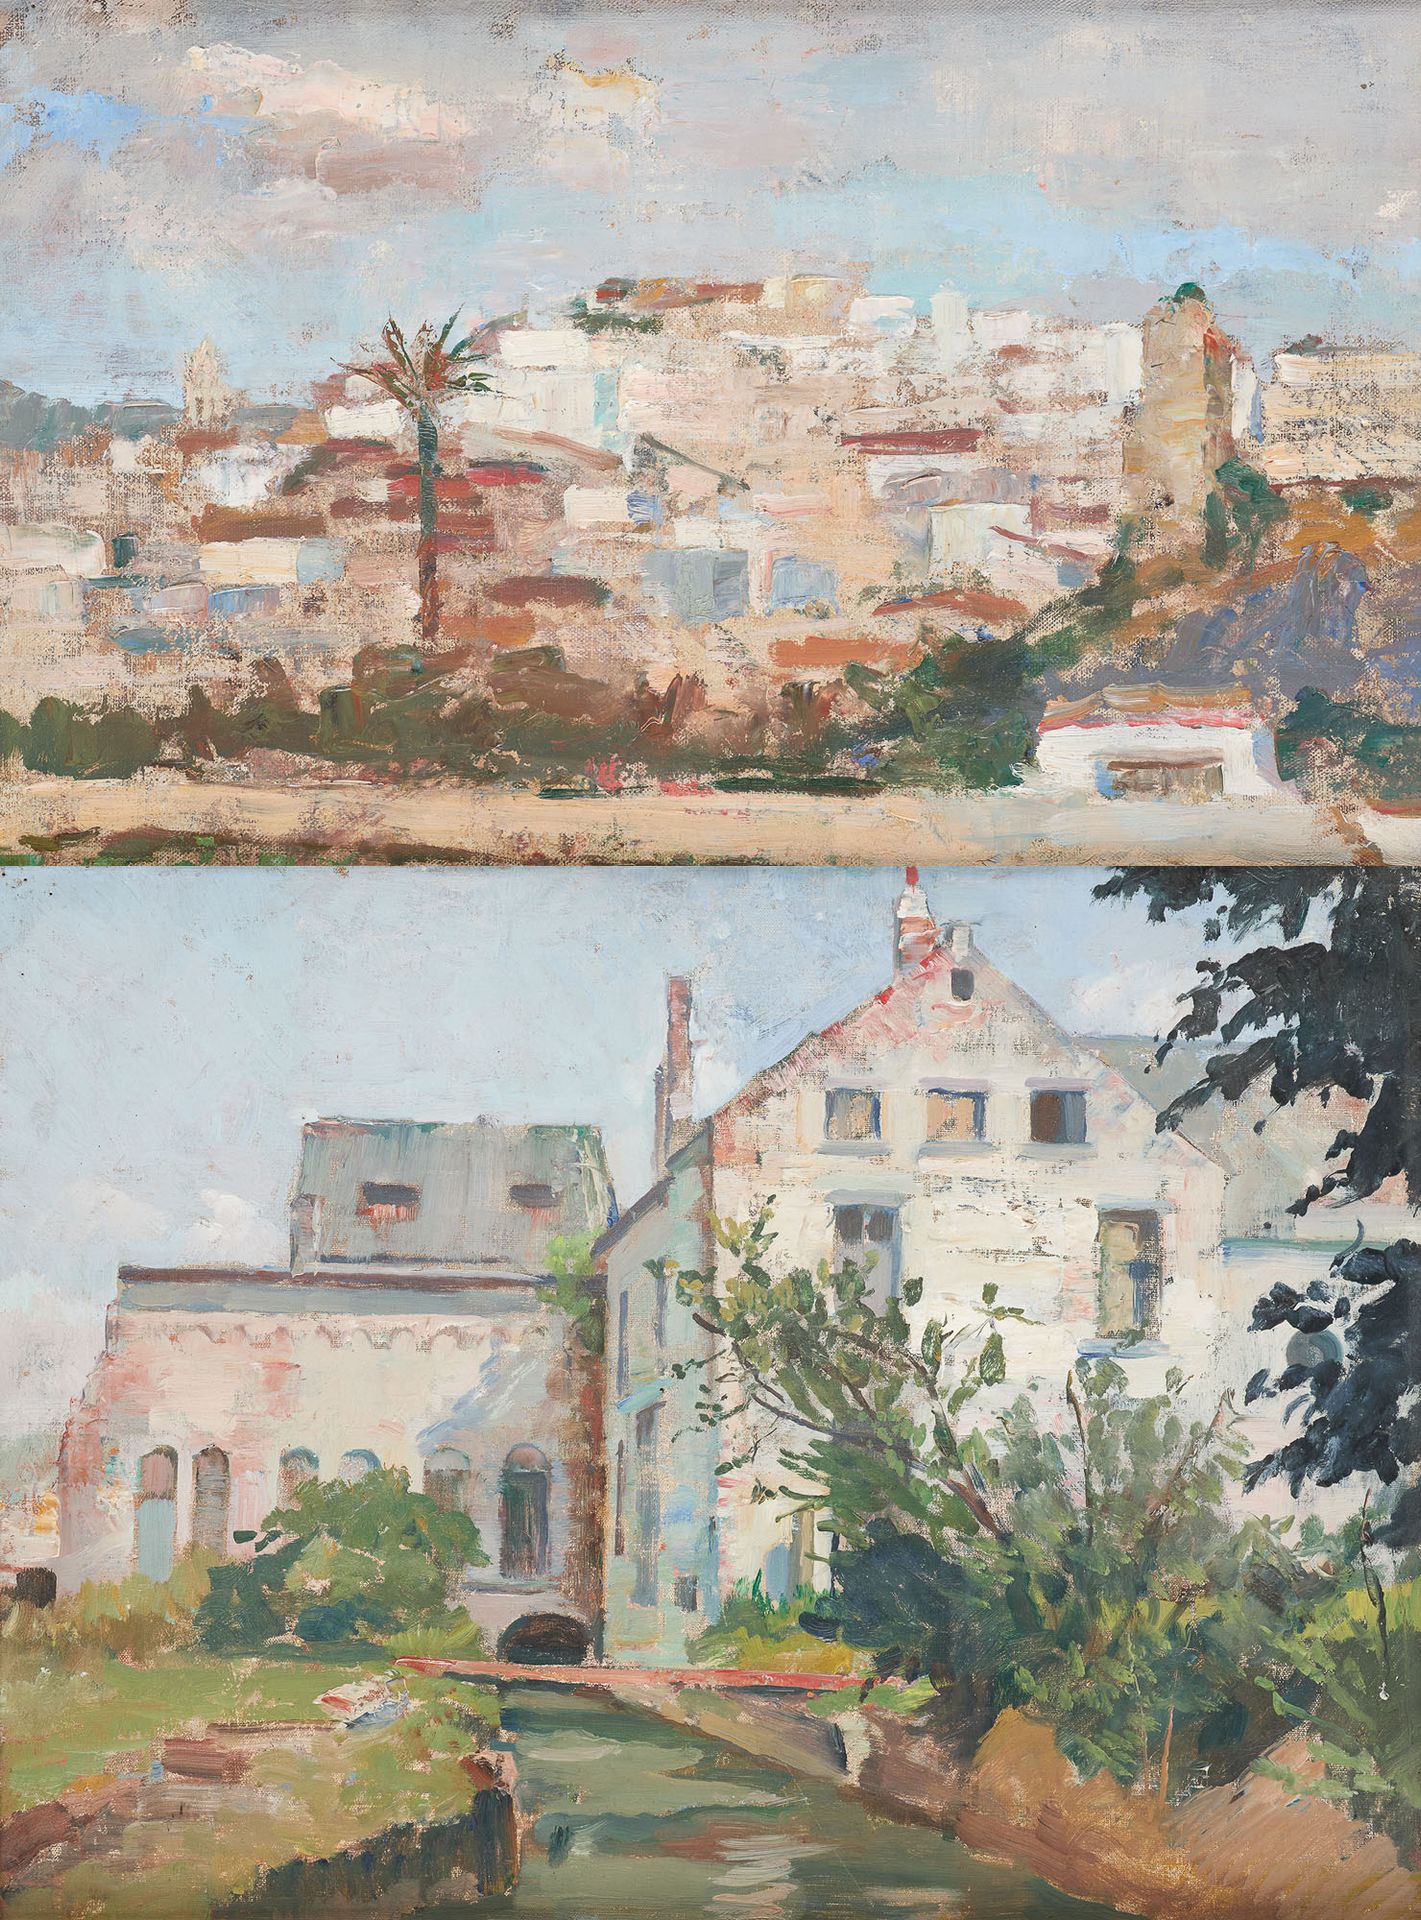 Éliane DE MEUSE École belge (1899-1993) 板面油画和布面油画（一套两幅）："1962年的西班牙阿尔穆尼卡村 "和 "水边的&hellip;